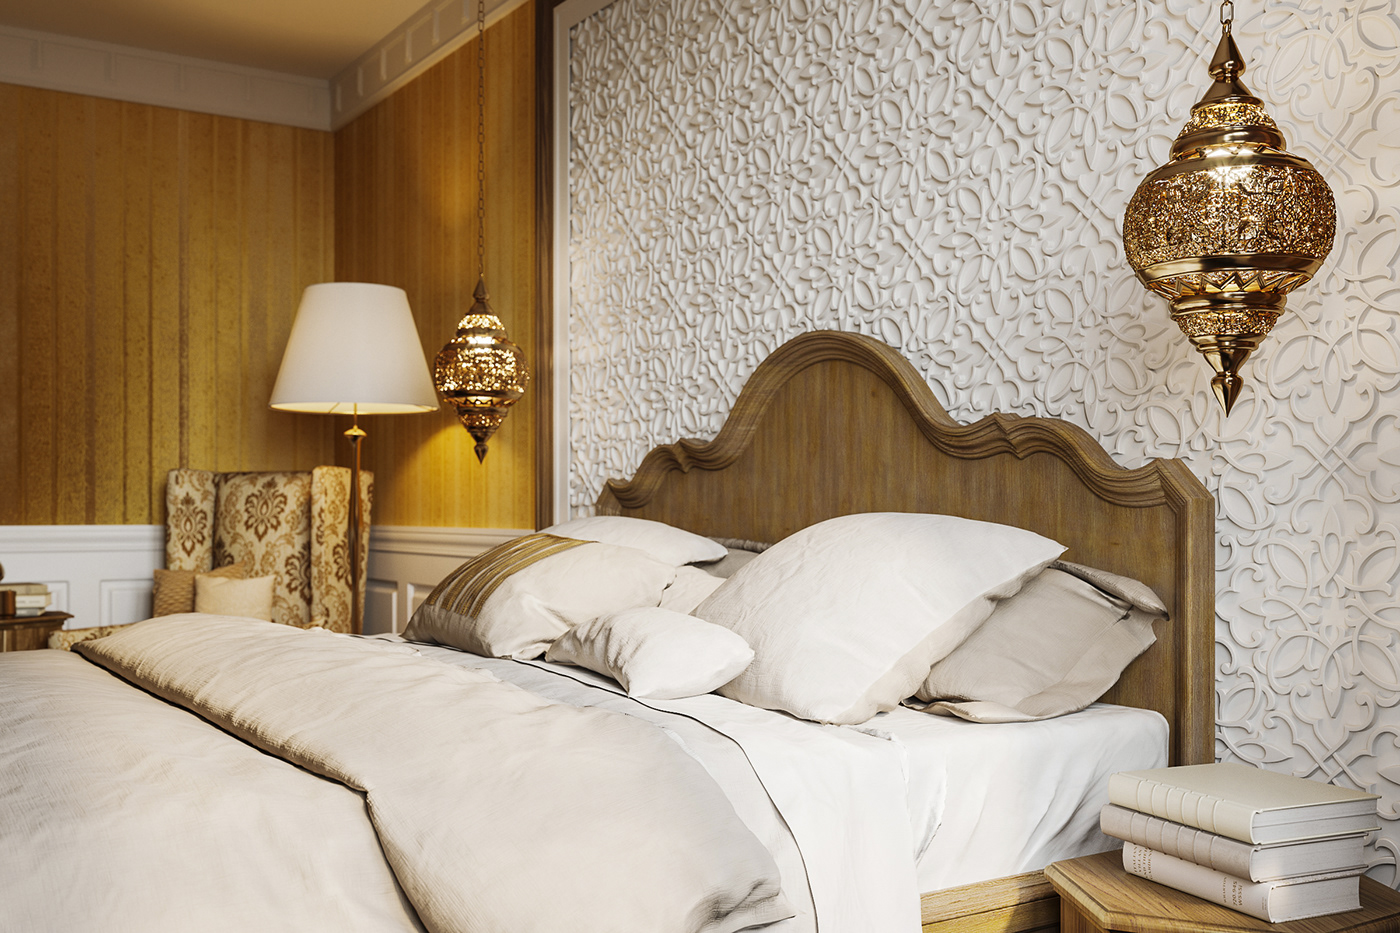 3ds max corona render  Applicata bedroom wowdom marroccan style Interior Visualization